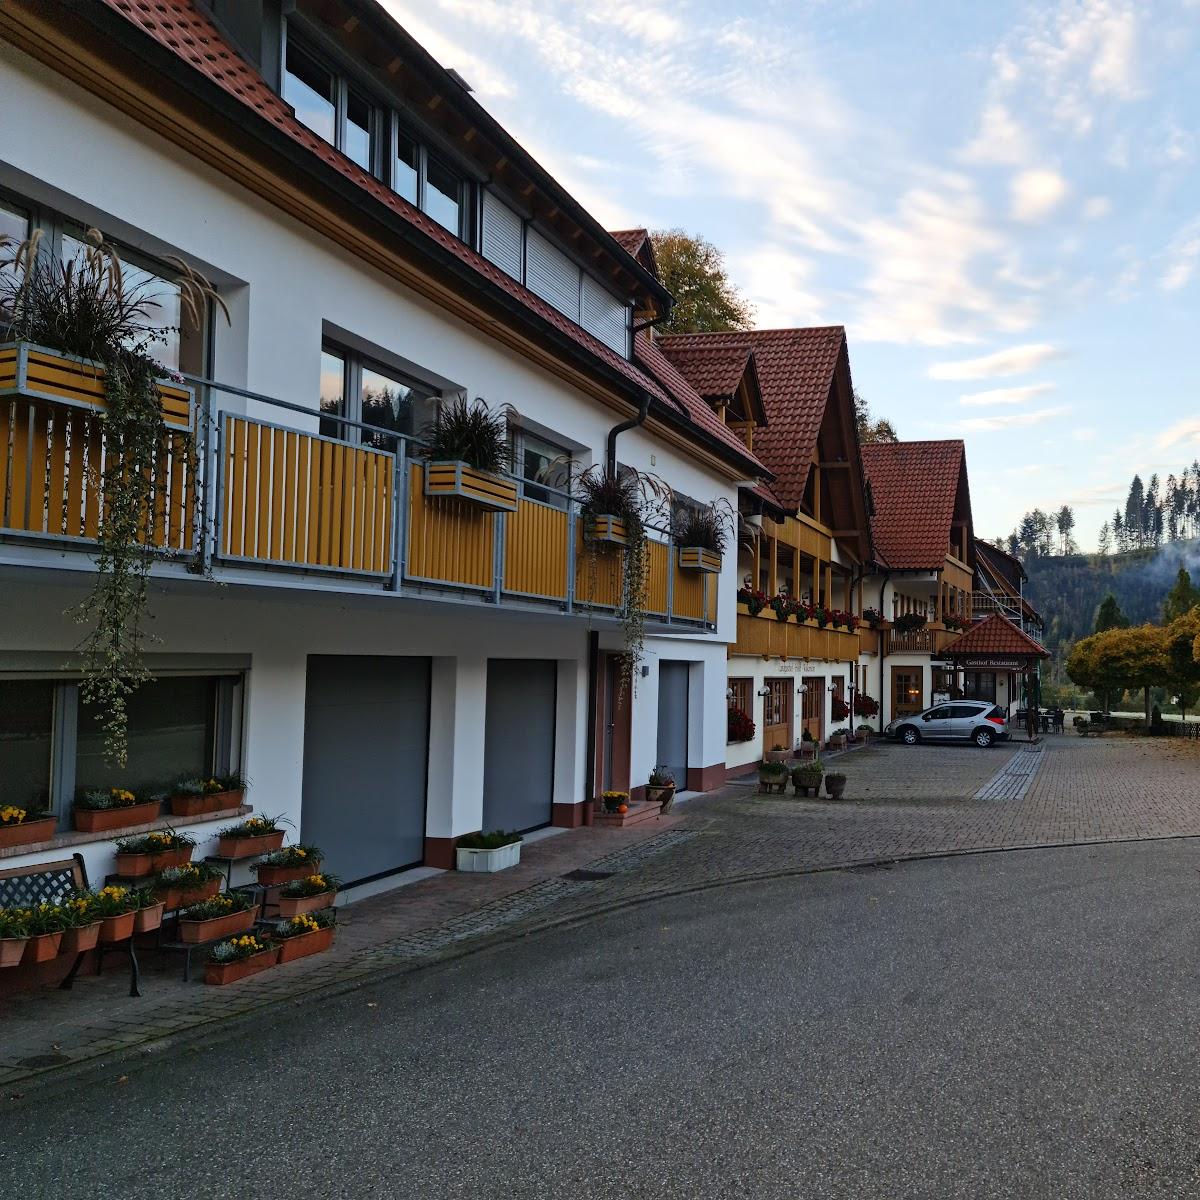 Restaurant "Zum Walkenstein" in Oberwolfach